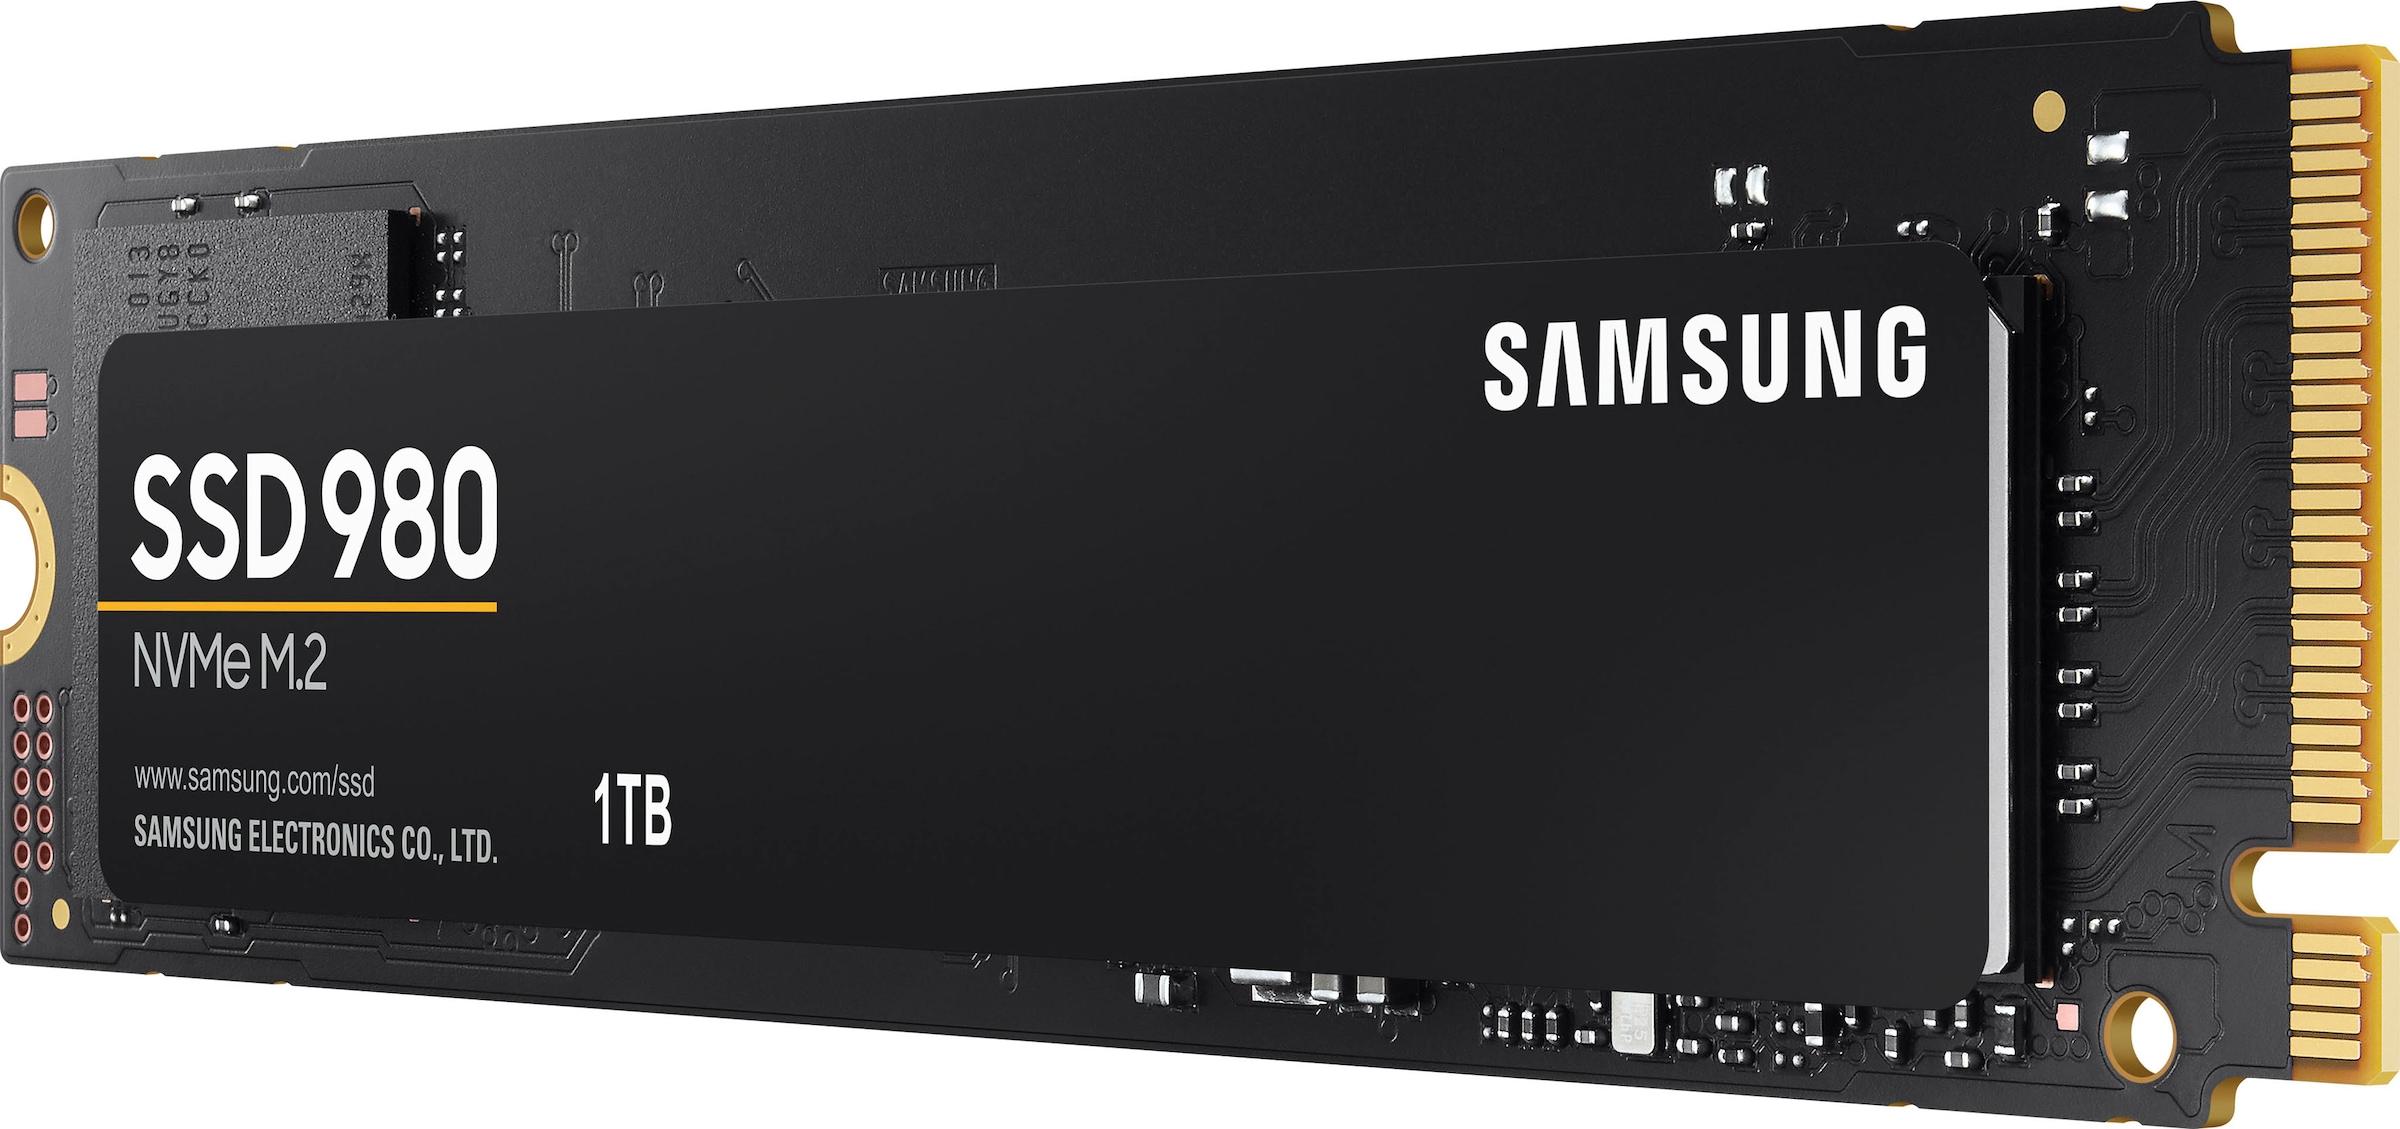 Samsung interne SSD »SSD 980«, Anschluss M.2 PCIe 3.0, NVMe